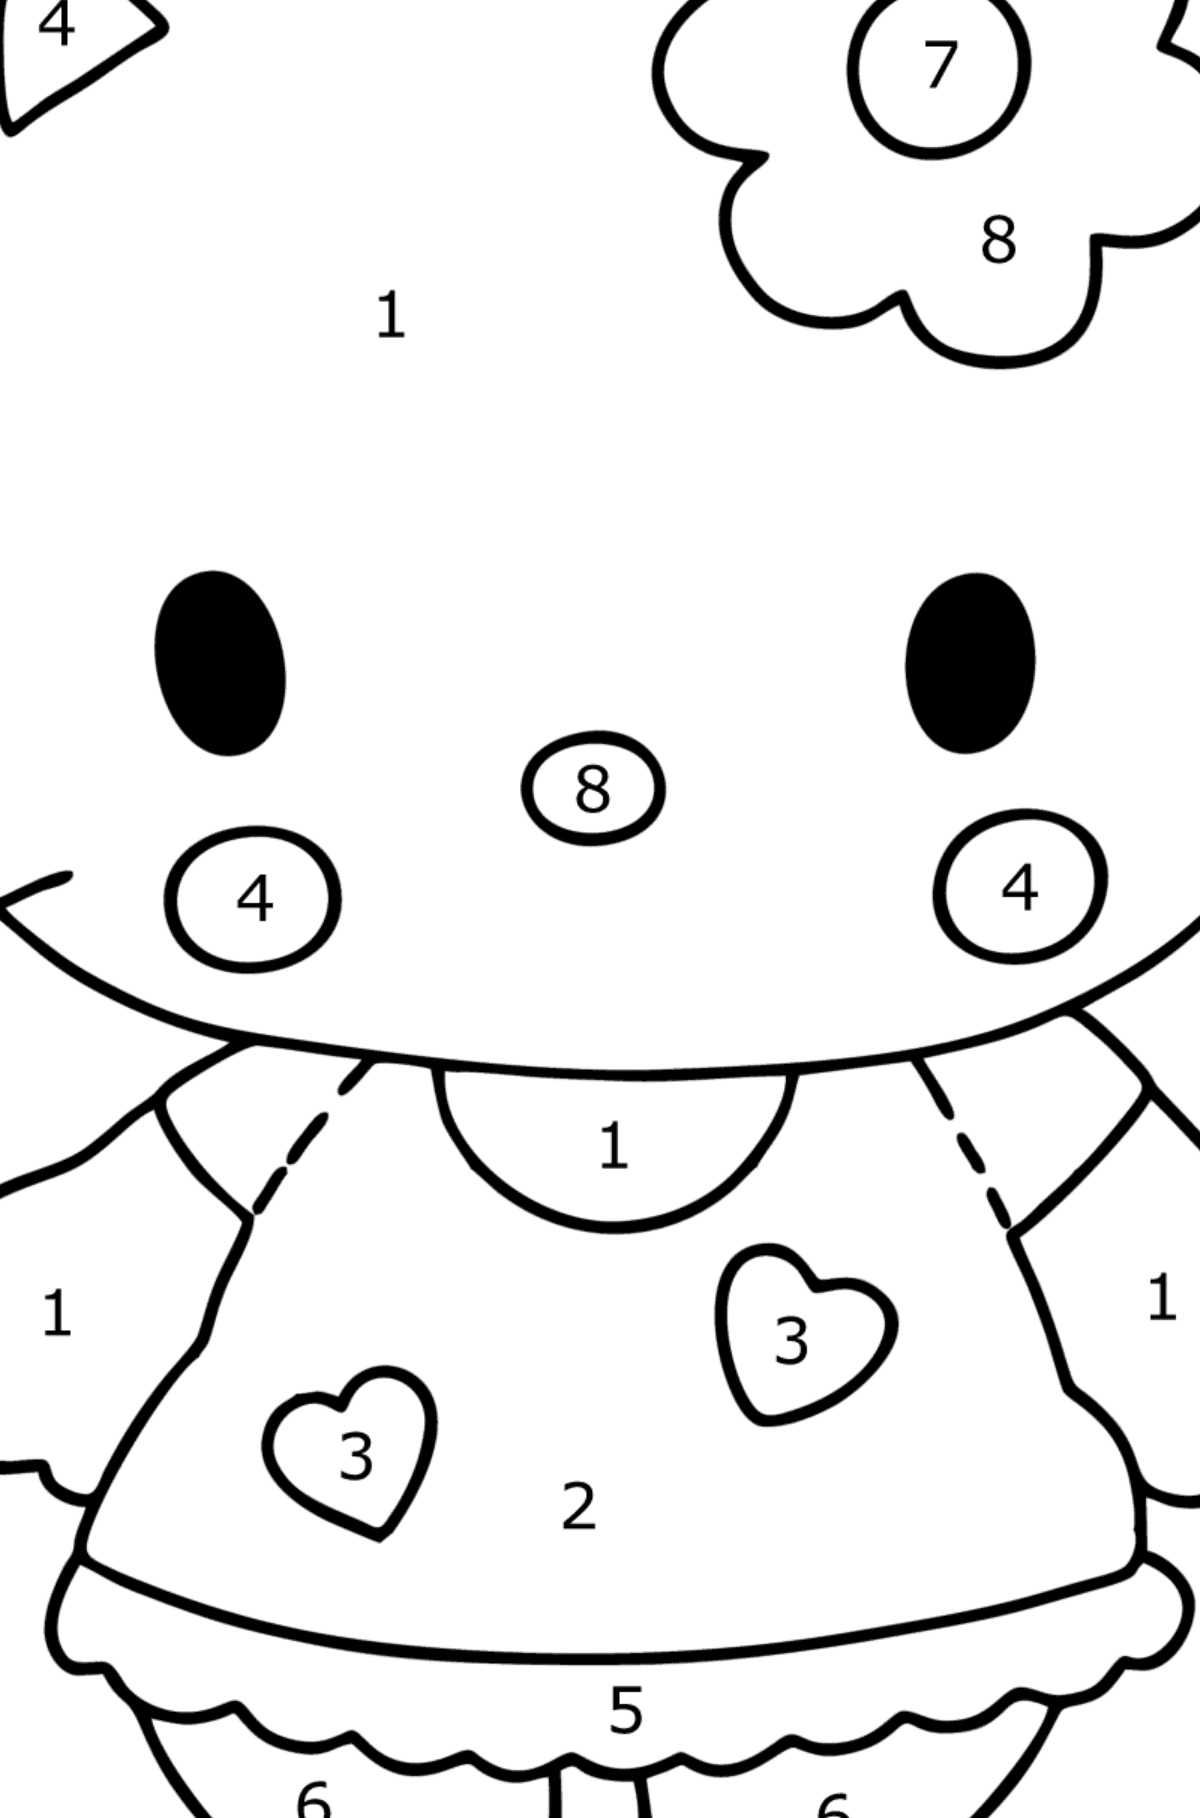 Boyama sayfası Hello Kitty - Sayılarla Boyama çocuklar için